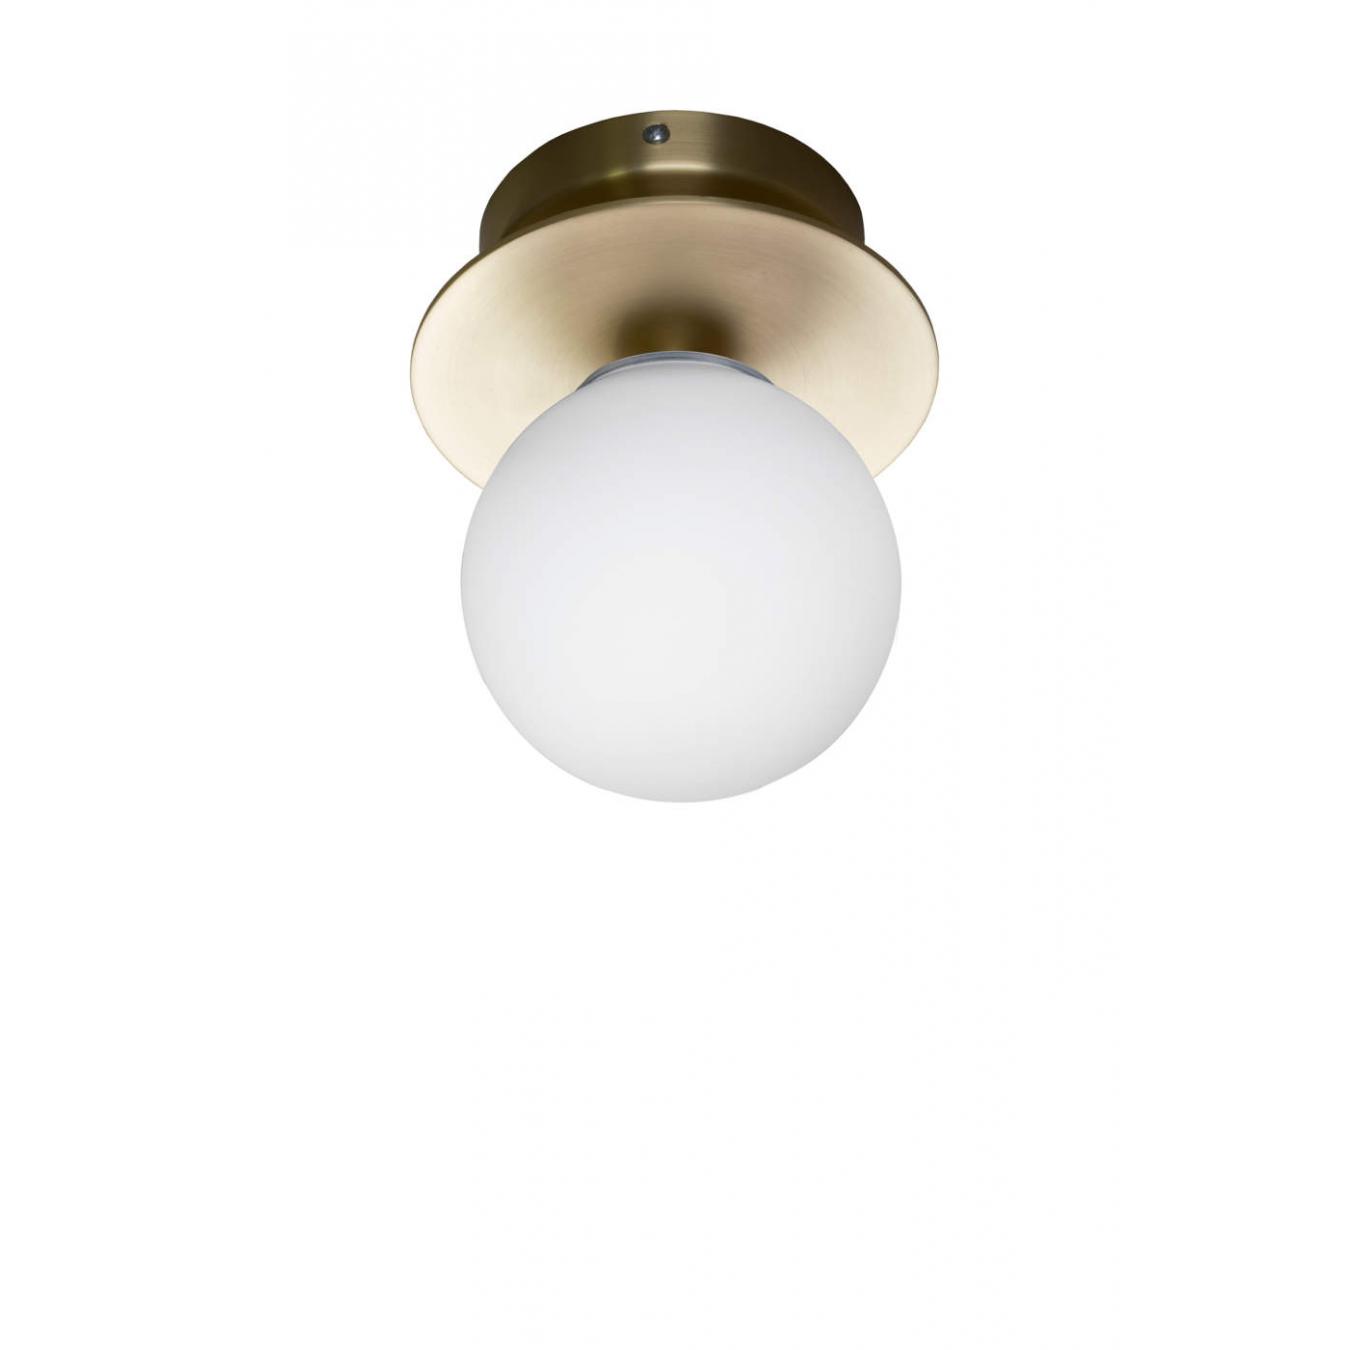 Globen Lighting Art Deco Plafoneer / Wall lamp brass // Art Deco Mennyezeti / Fali lámpa réz